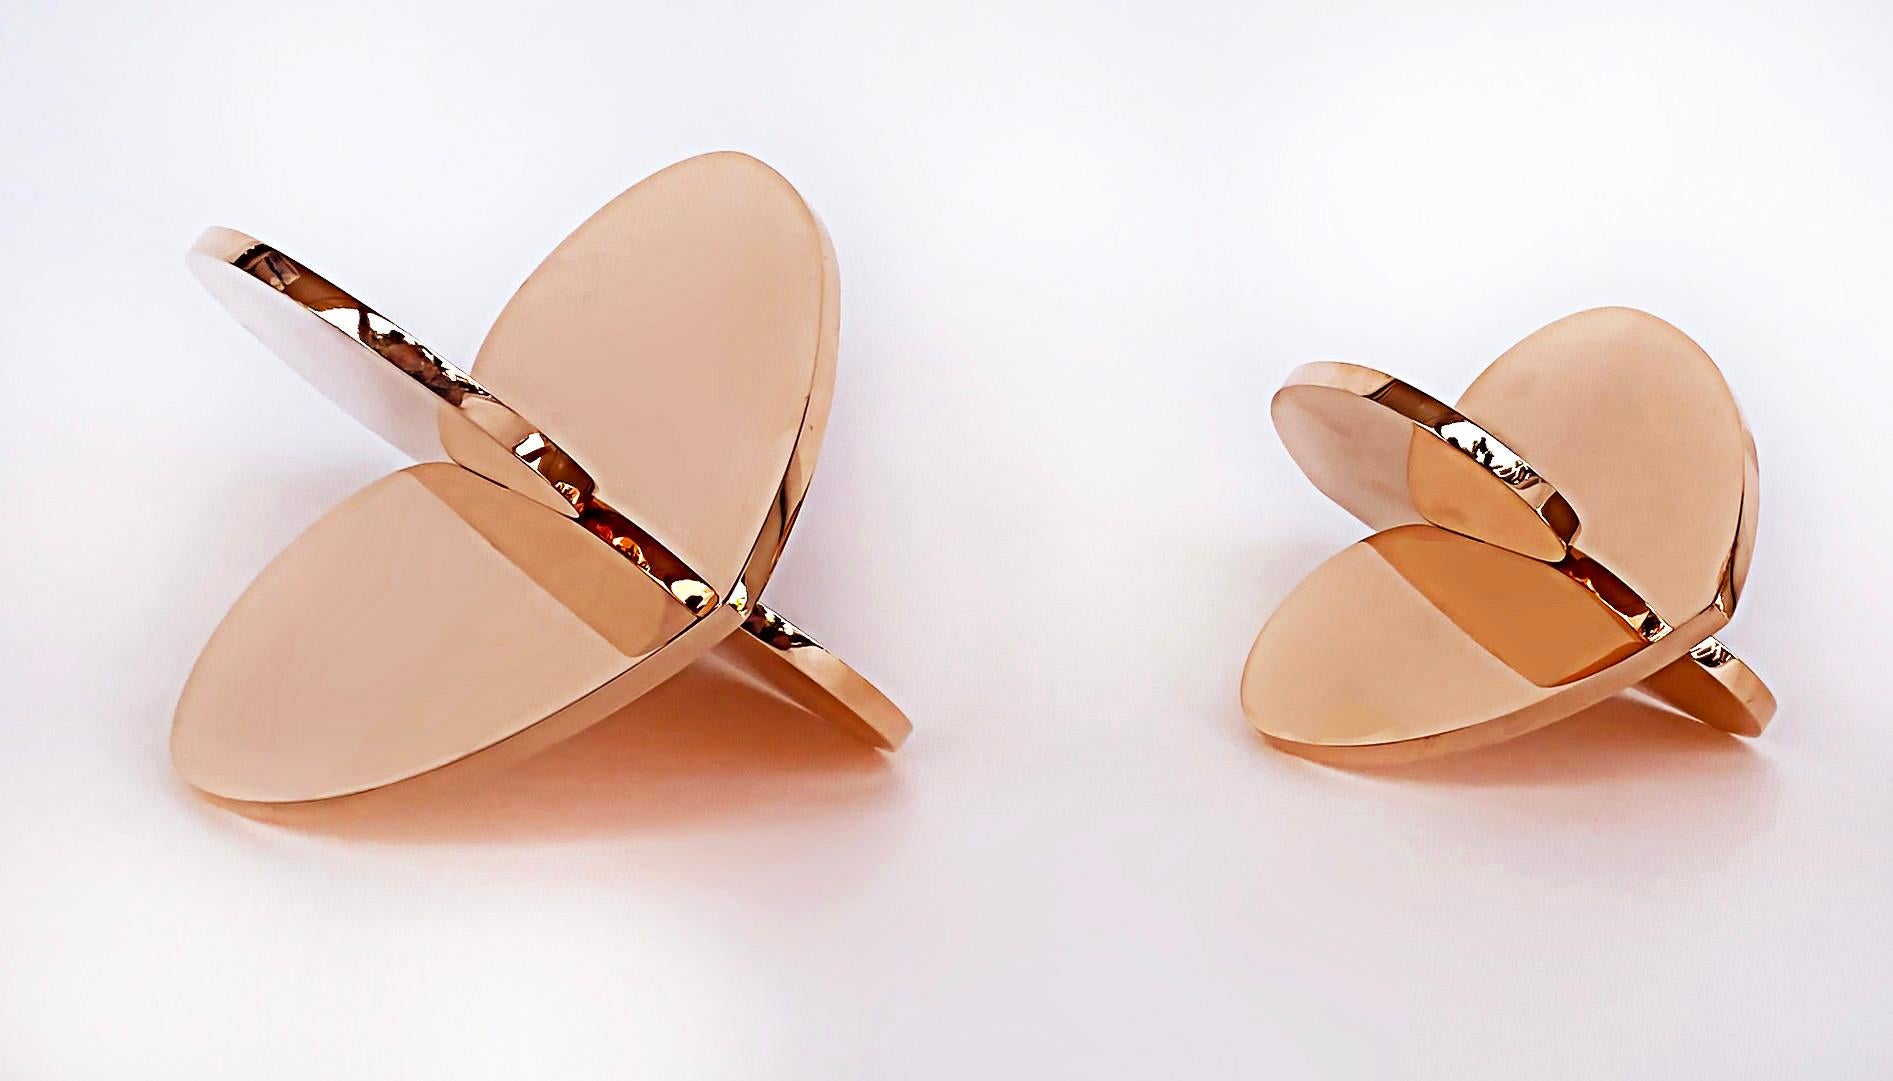 American Copper Interlocking Heart Sculptures Michael Gitter & Phu Truong, Solid